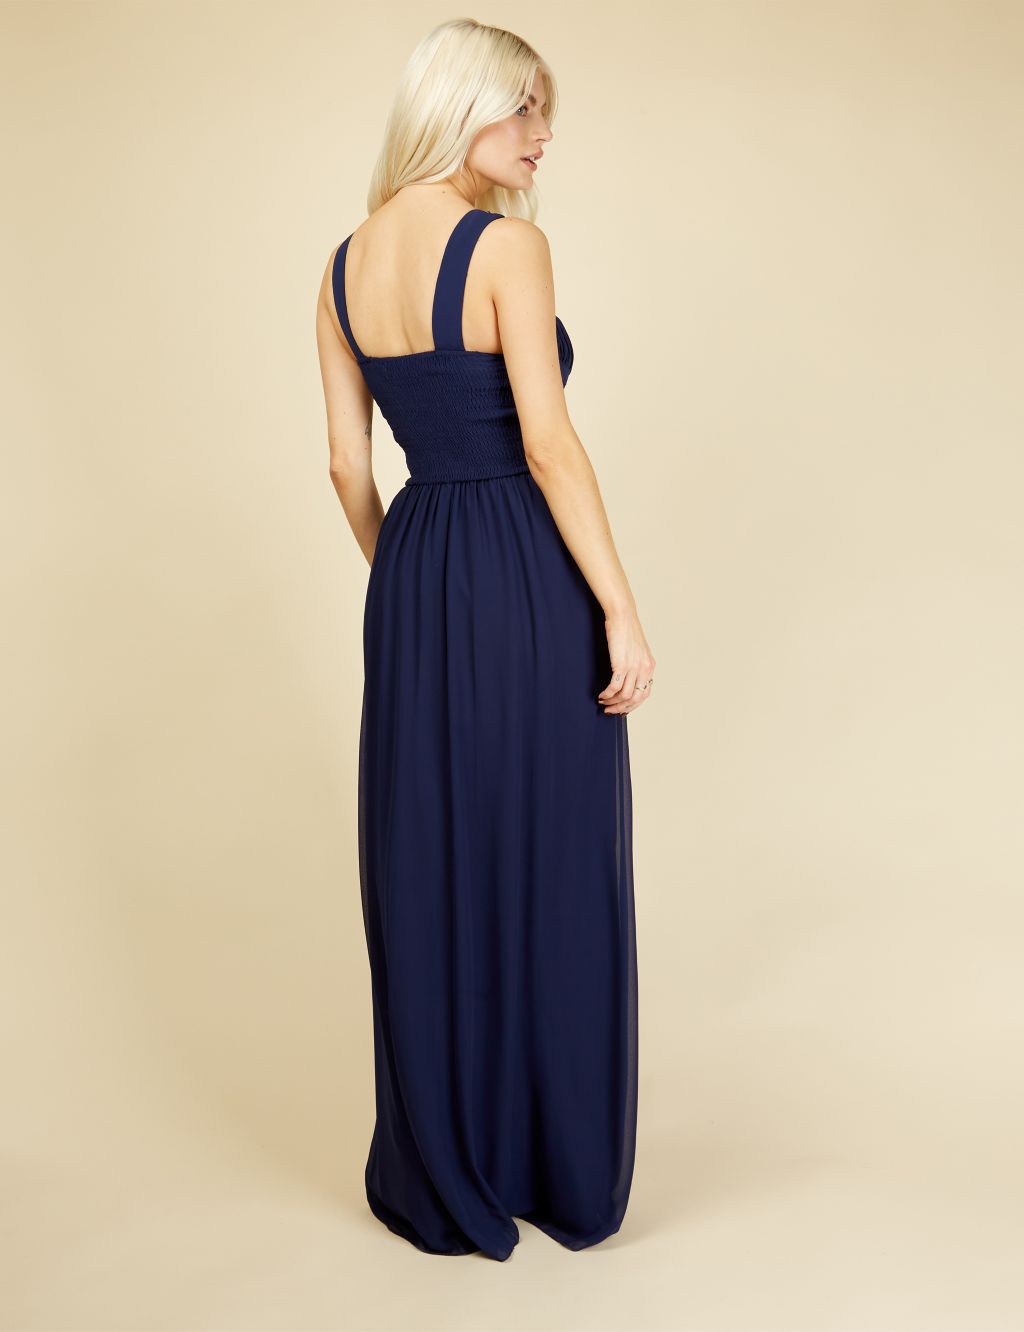 Embellished Sleeveless Maxi Waisted Dress image 4